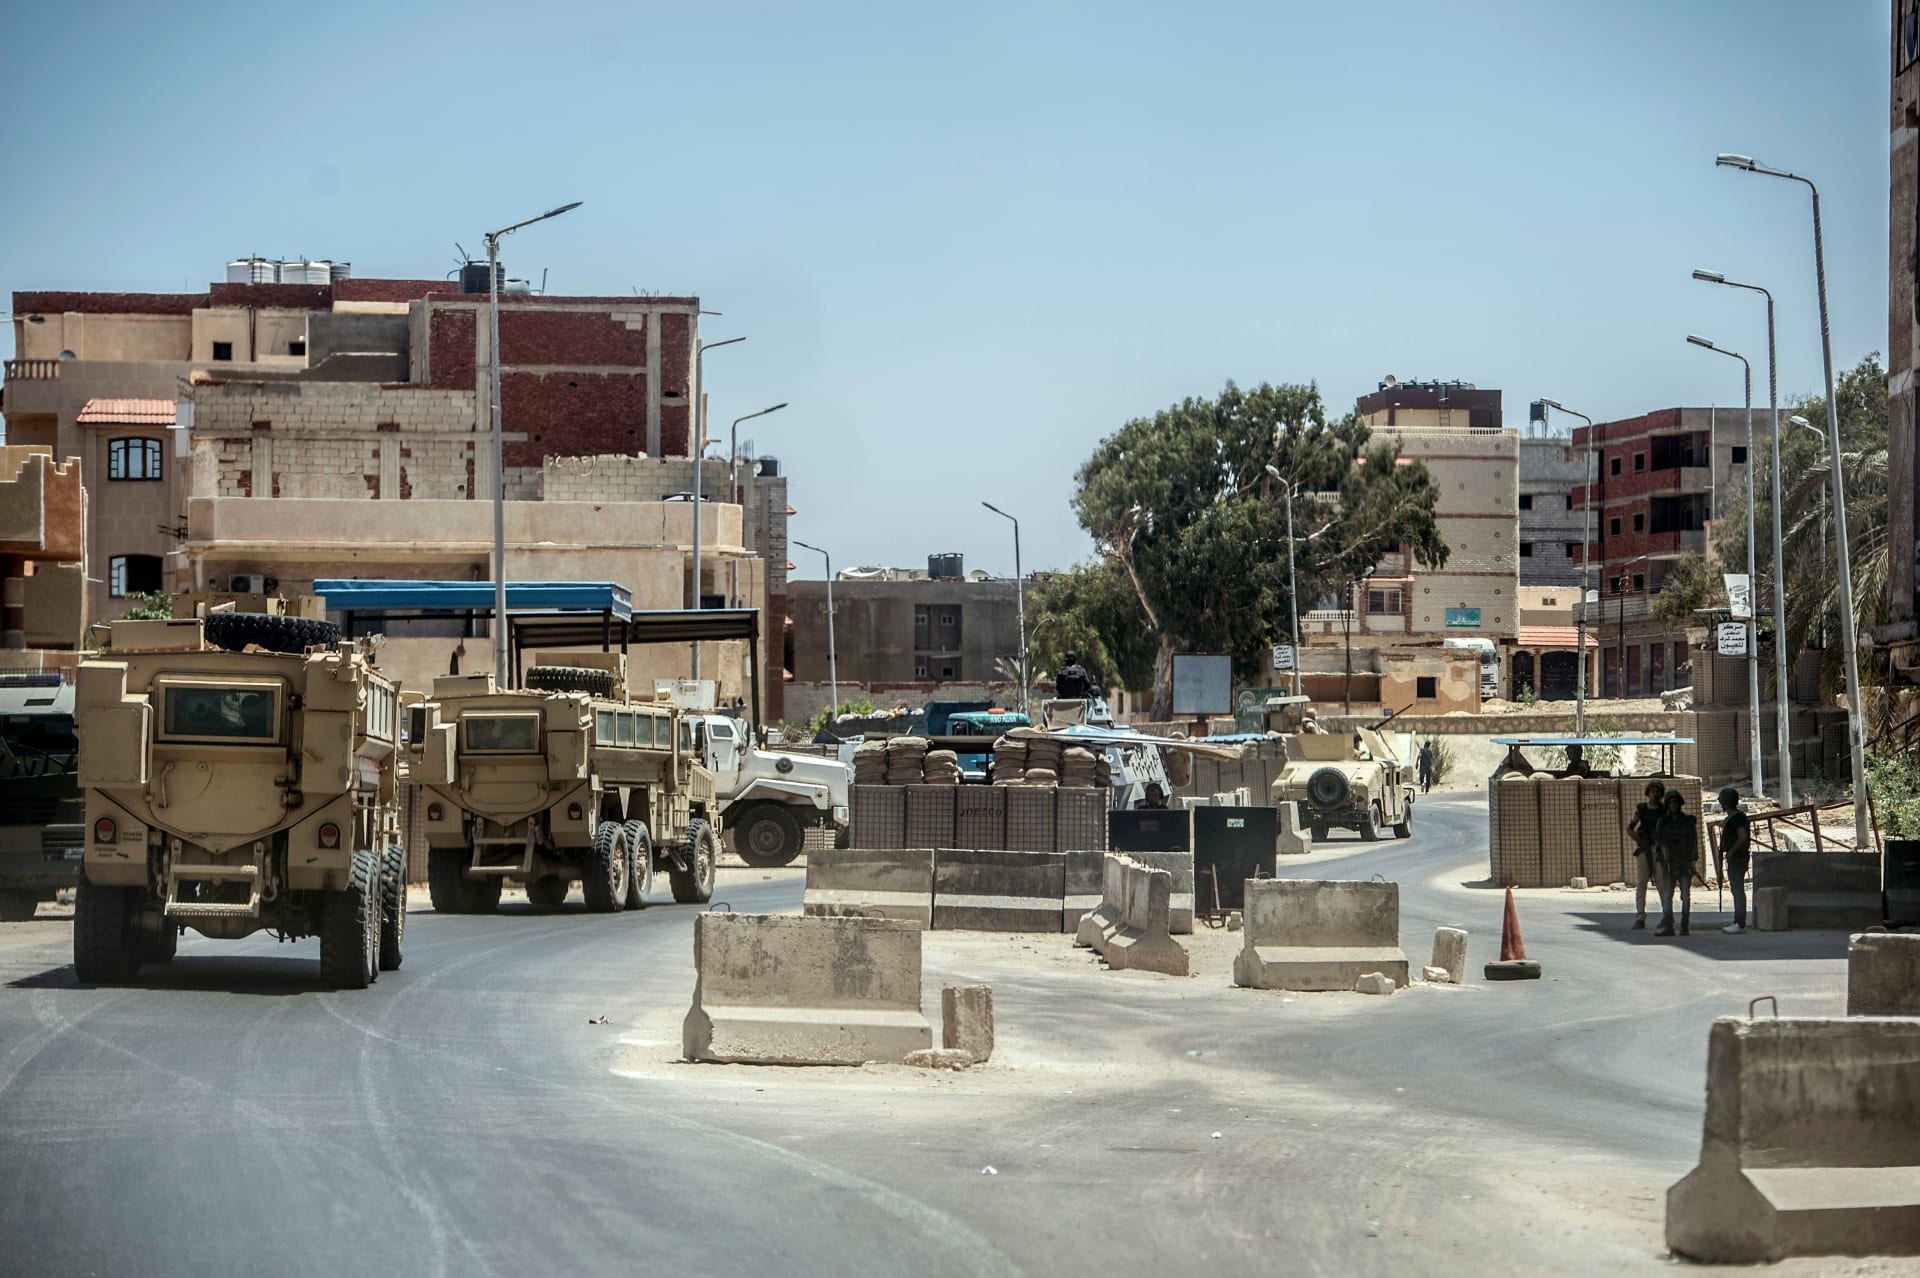 الجيش المصري يعلن مقتل 7 "تكفيريين" خلال مداهمة أمنية في شمال سيناء - CNN  Arabic